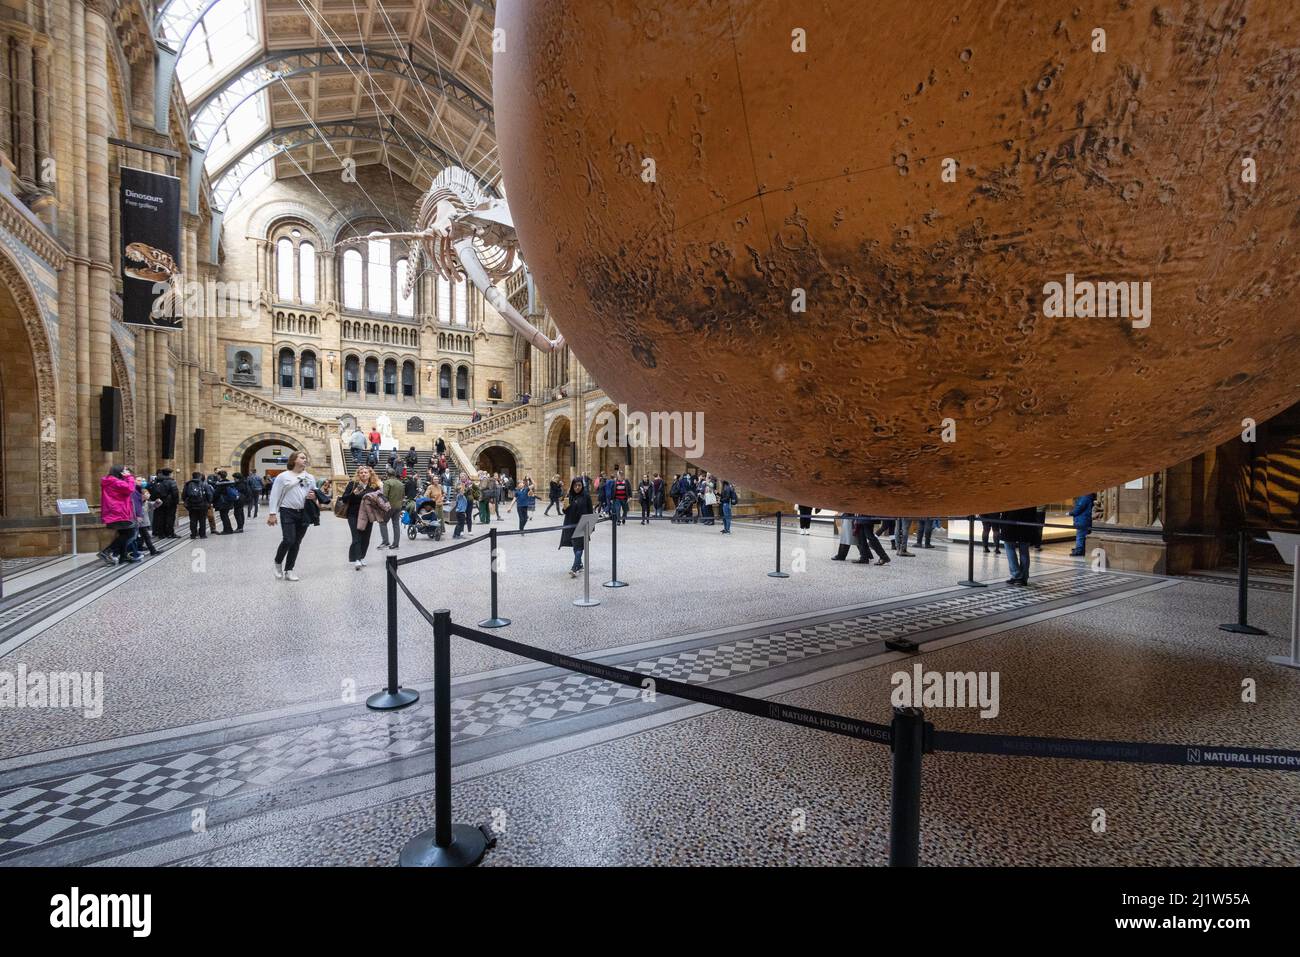 Luke Jerram Mars; personnes regardant le modèle d'art de Mars par Luke Jerram dans la salle principale du Musée d'histoire naturelle, Londres Royaume-Uni Banque D'Images